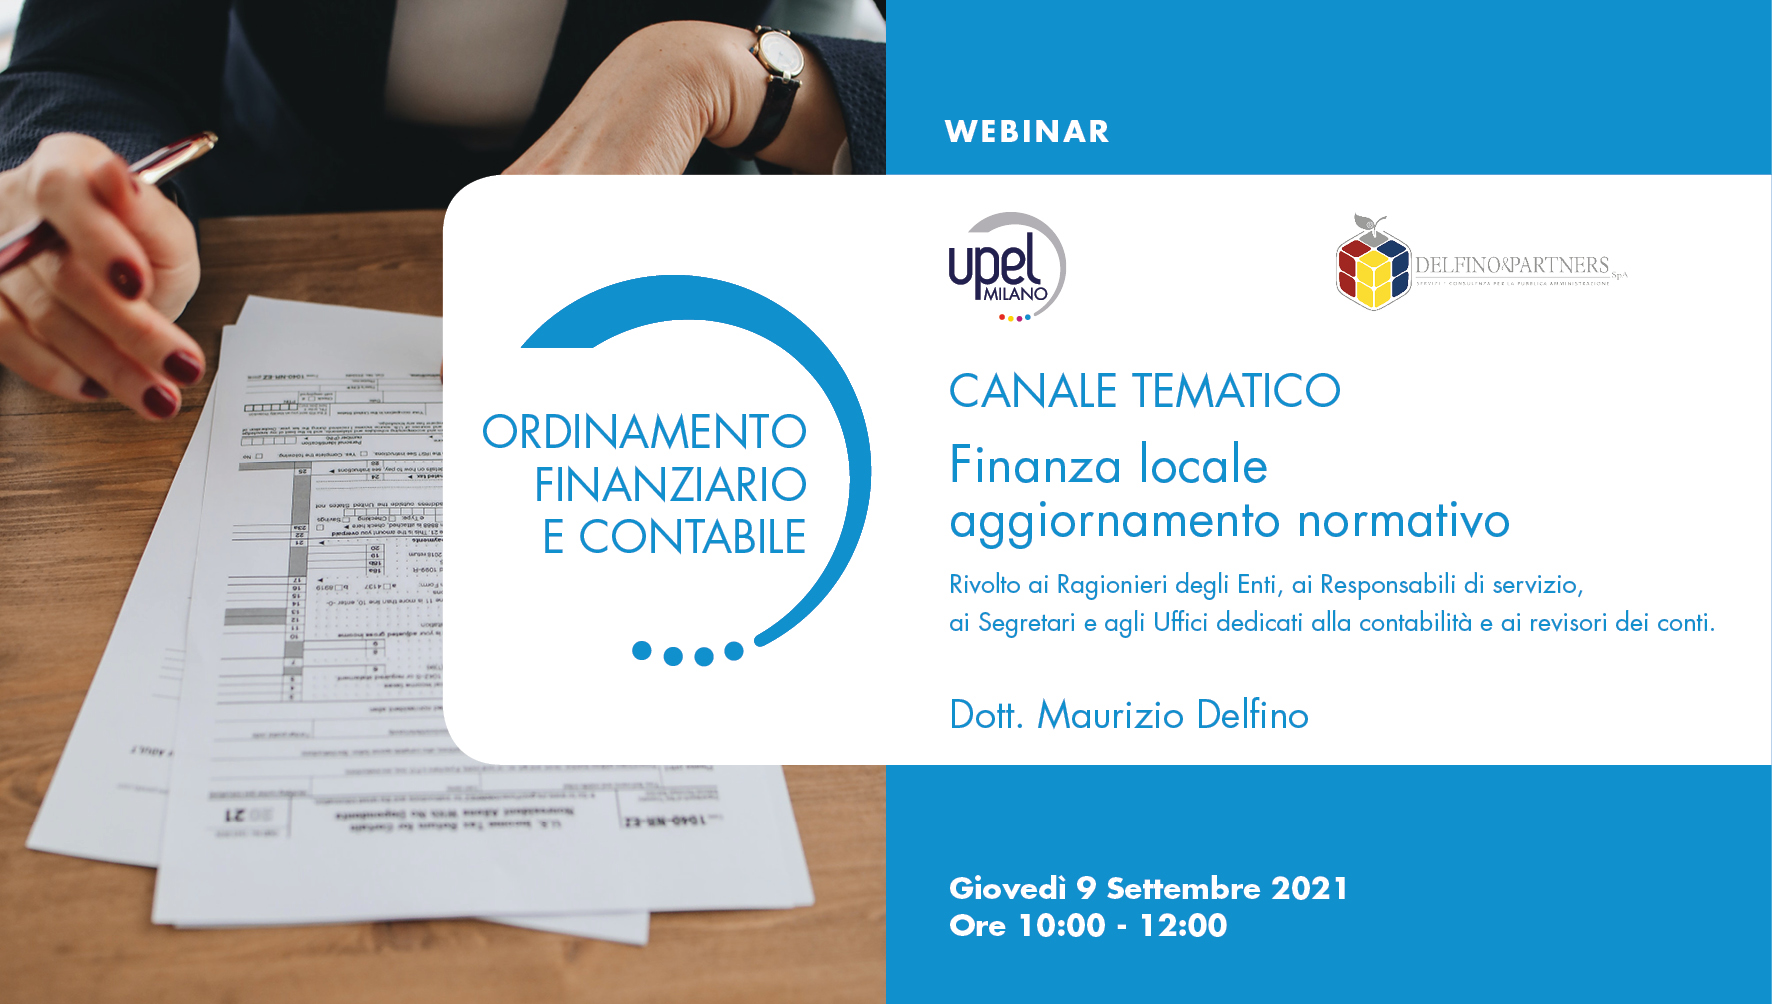 Canale tematico con Delfino&Partners - 17 - Finanza locale aggiornamento normativo